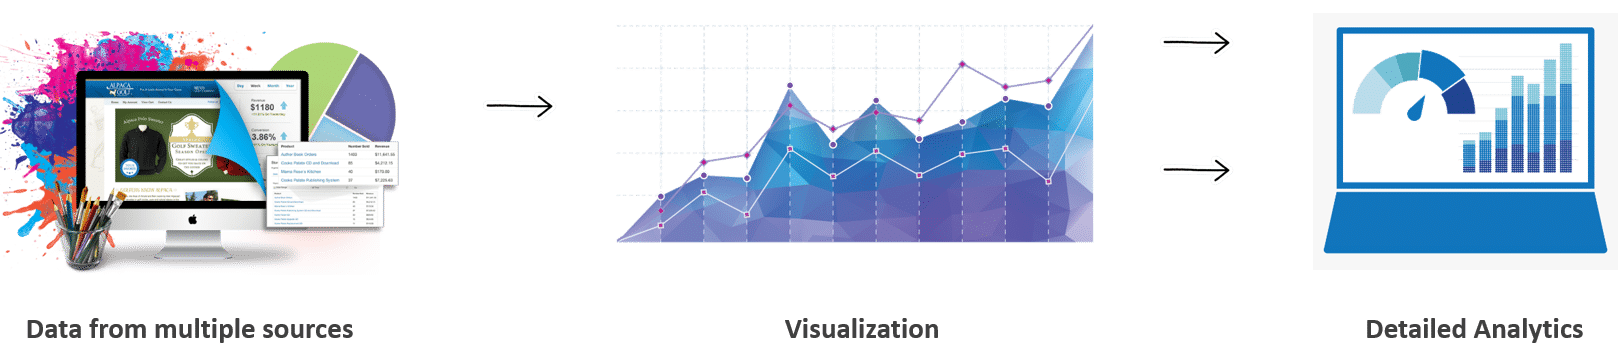 Data Visualization and Data Analytics